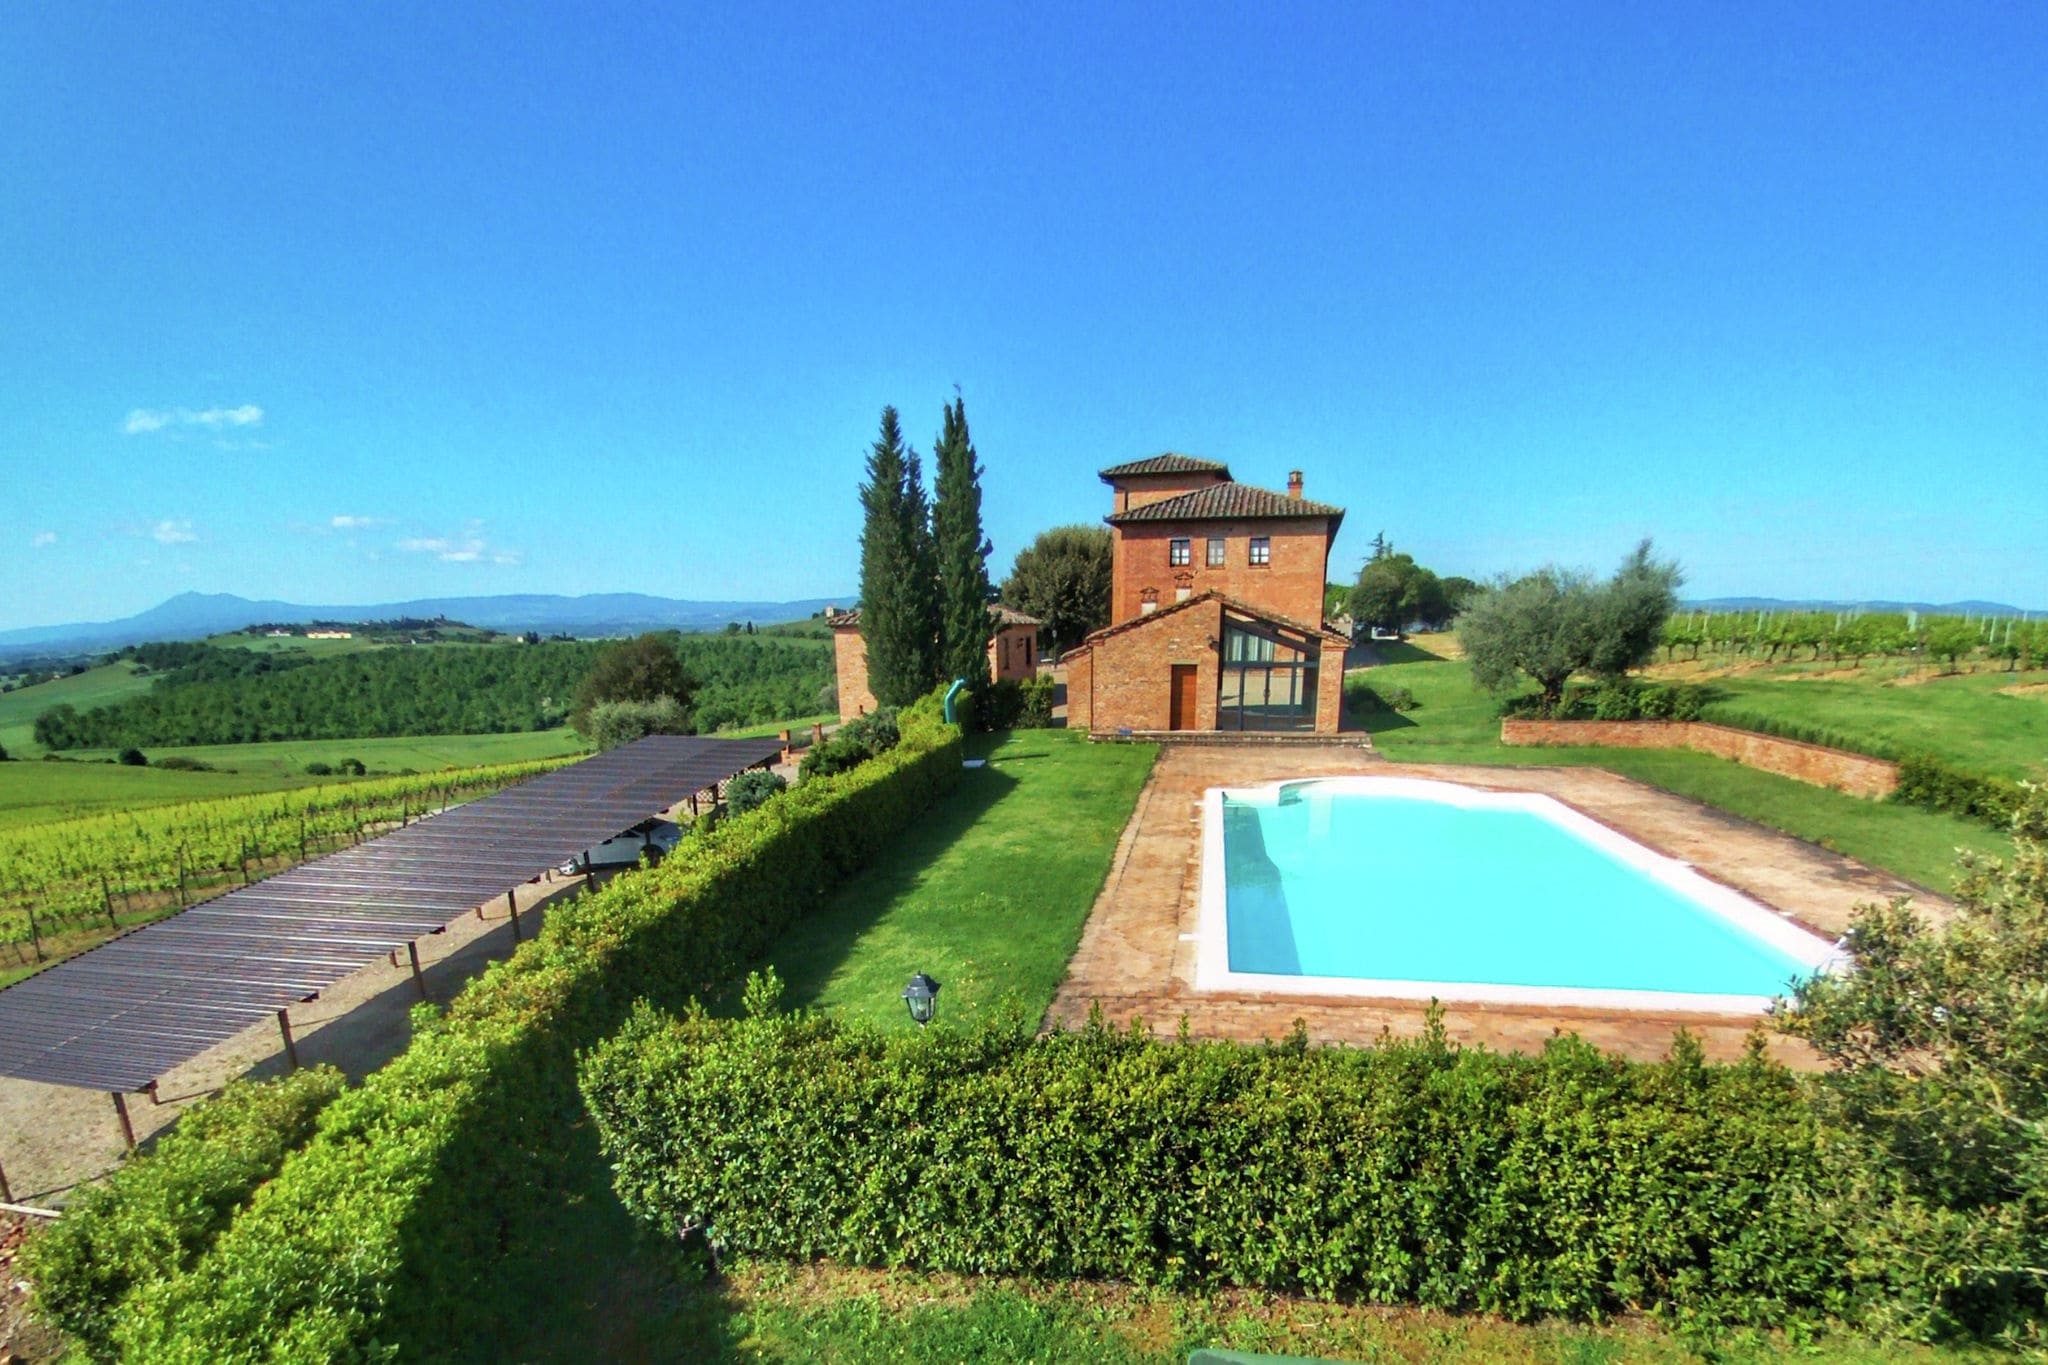 Agriturismo met zwembad, uitzicht over wijngaard Vino Nobile di Montepulciano